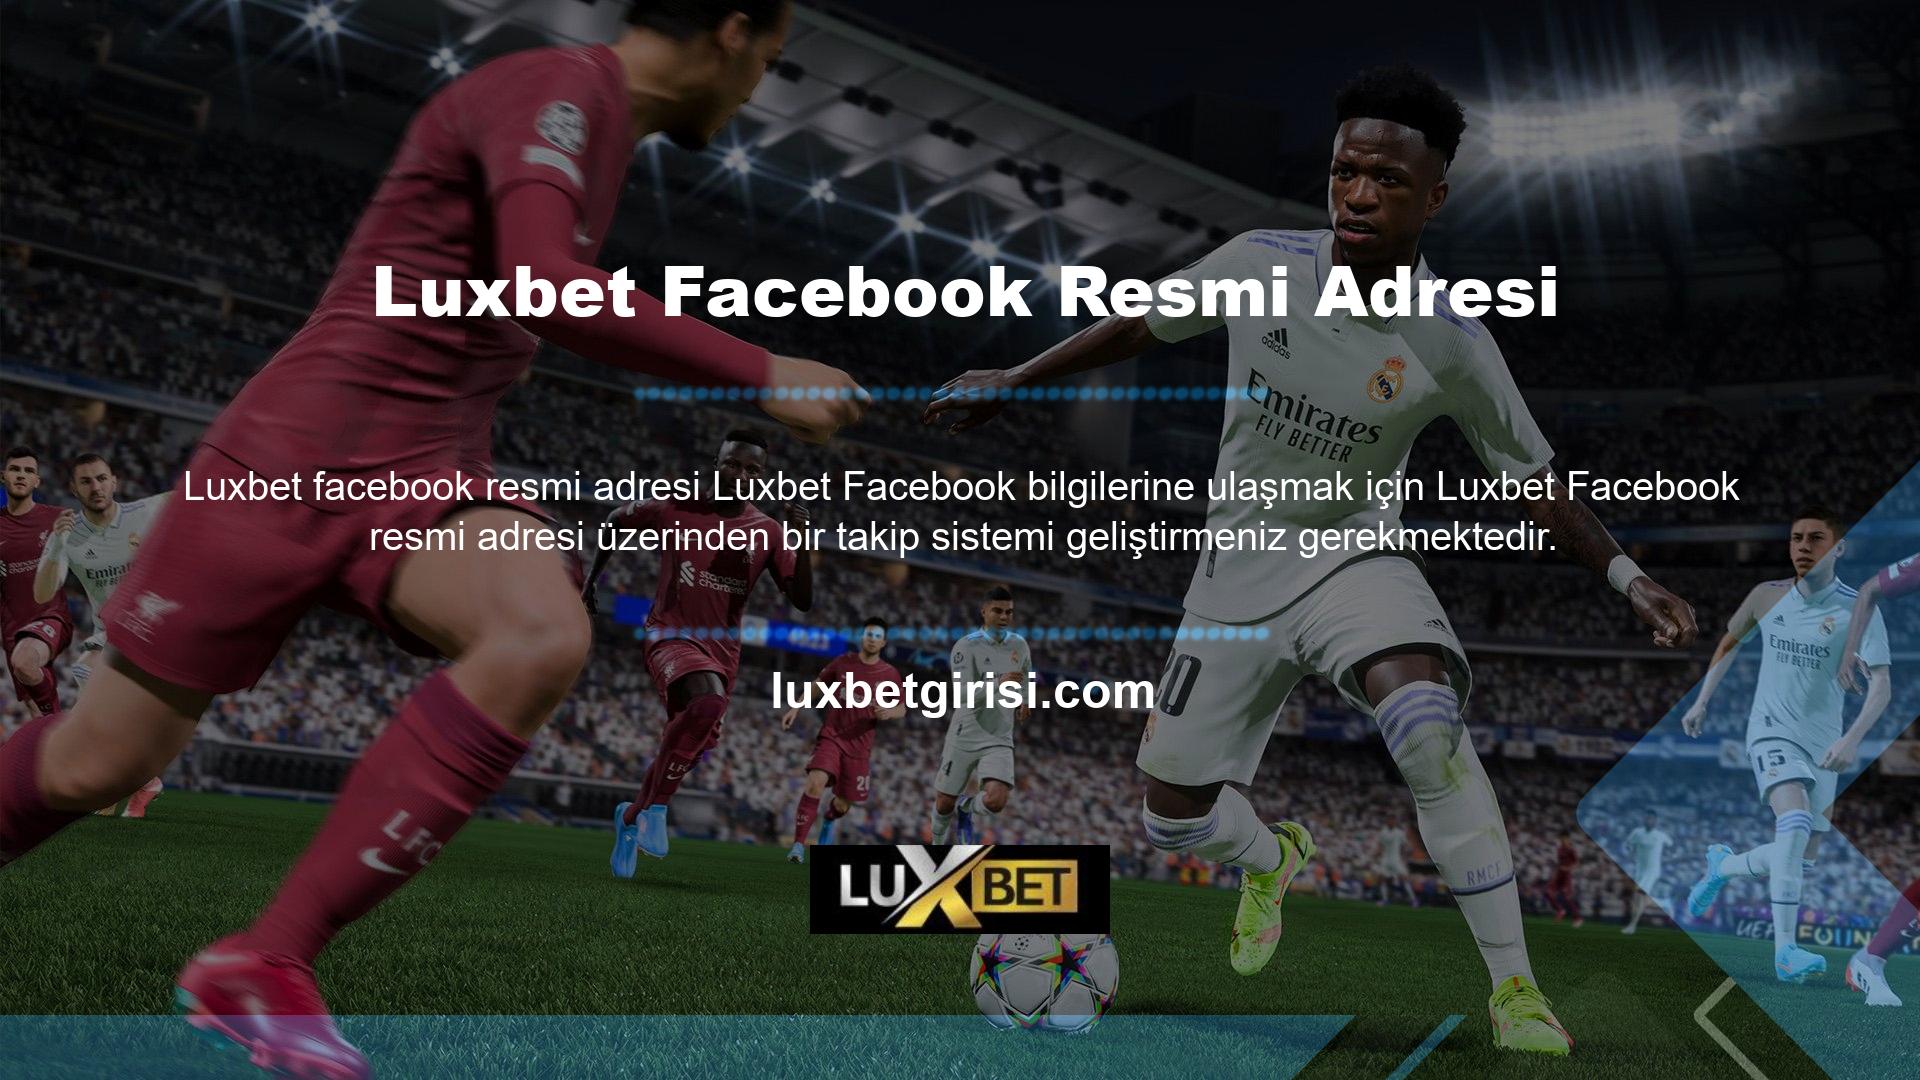 Lütfen bu web sitesinin resmi Facebook hesap adresinin Luxbet olduğunu unutmayın